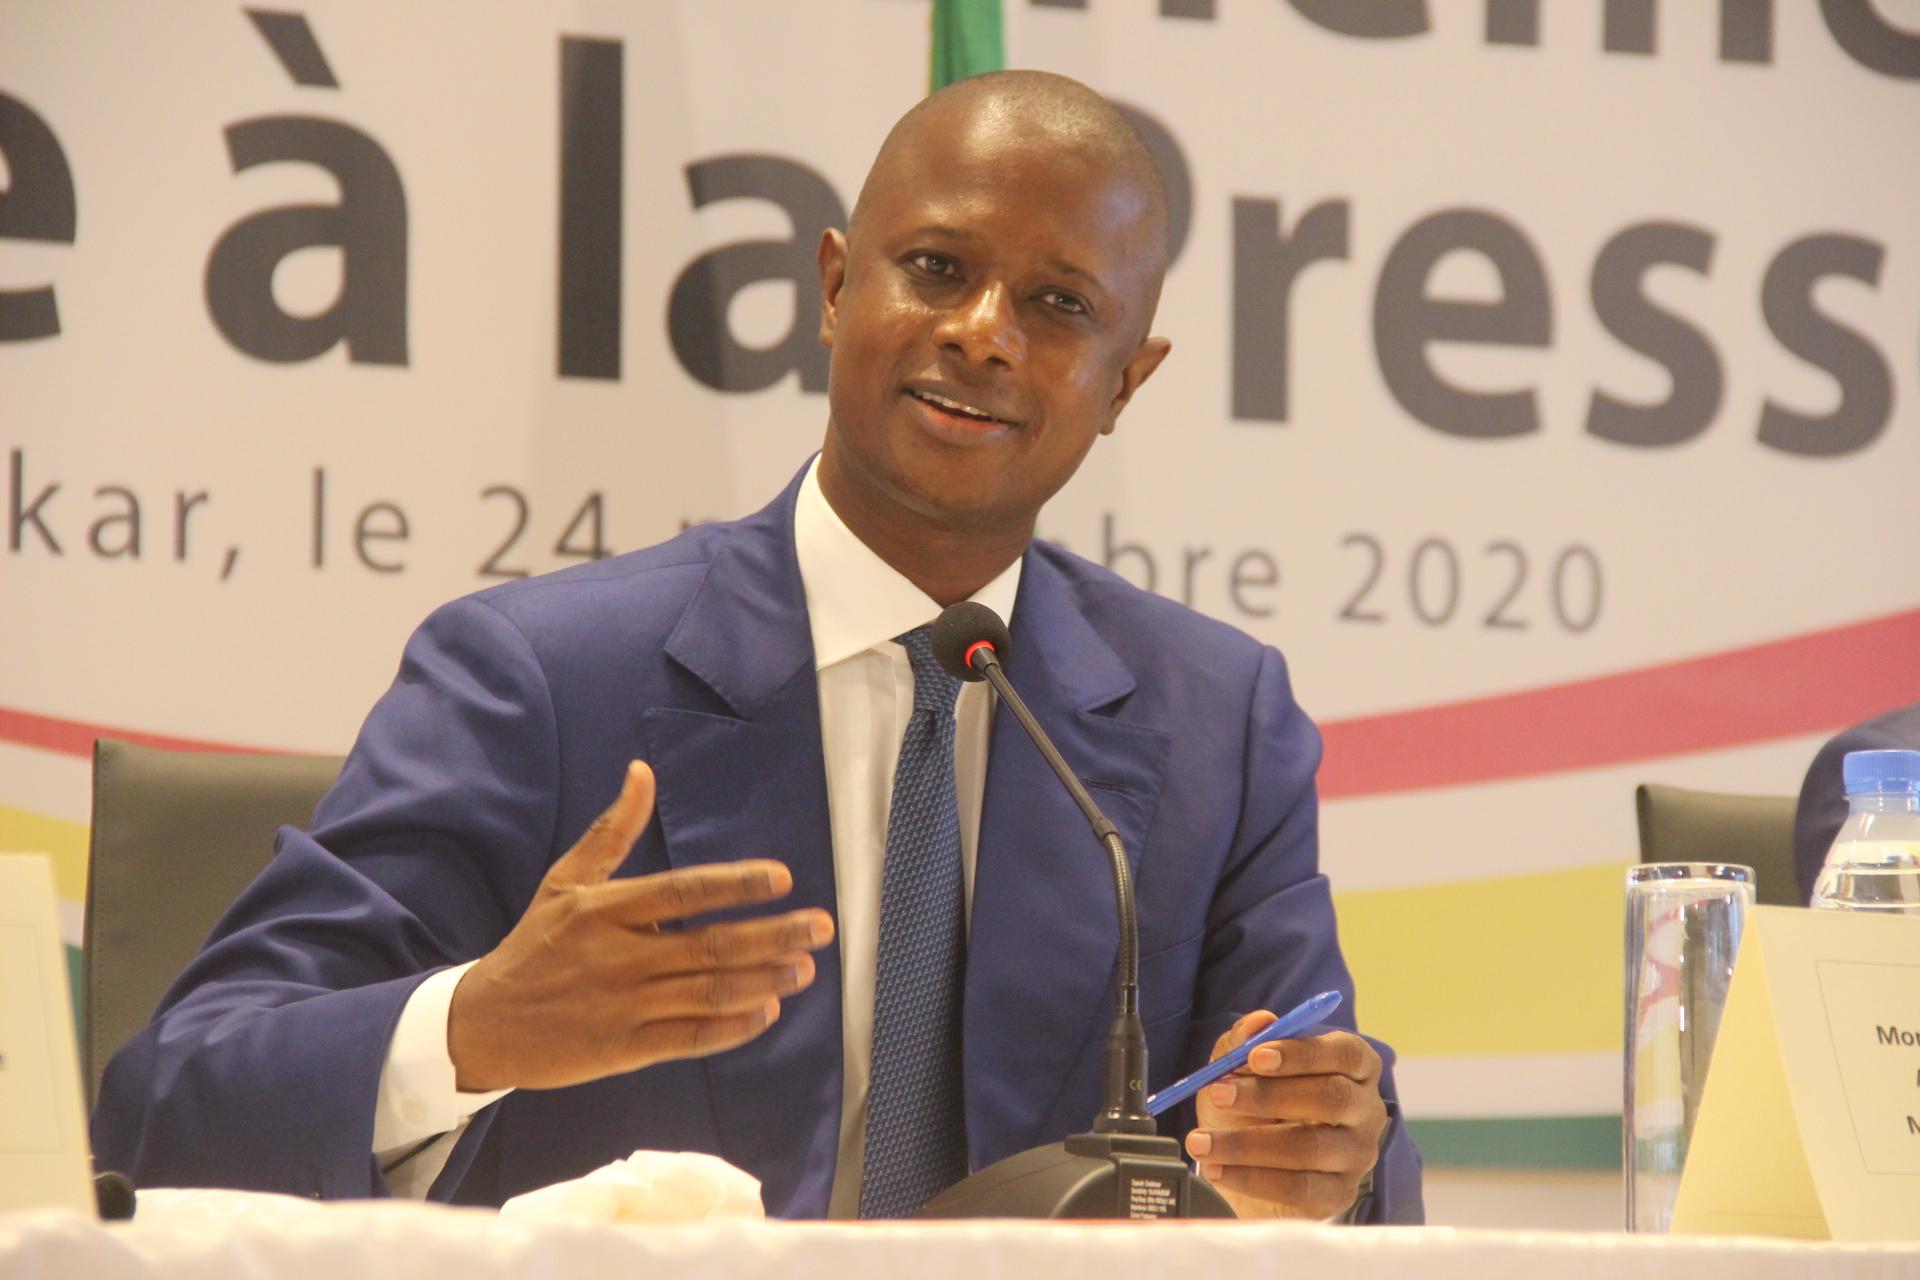 Législatives 2022 : Le ministre de l'intérieur, Antoine DIOME fixe la caution à... (Document)